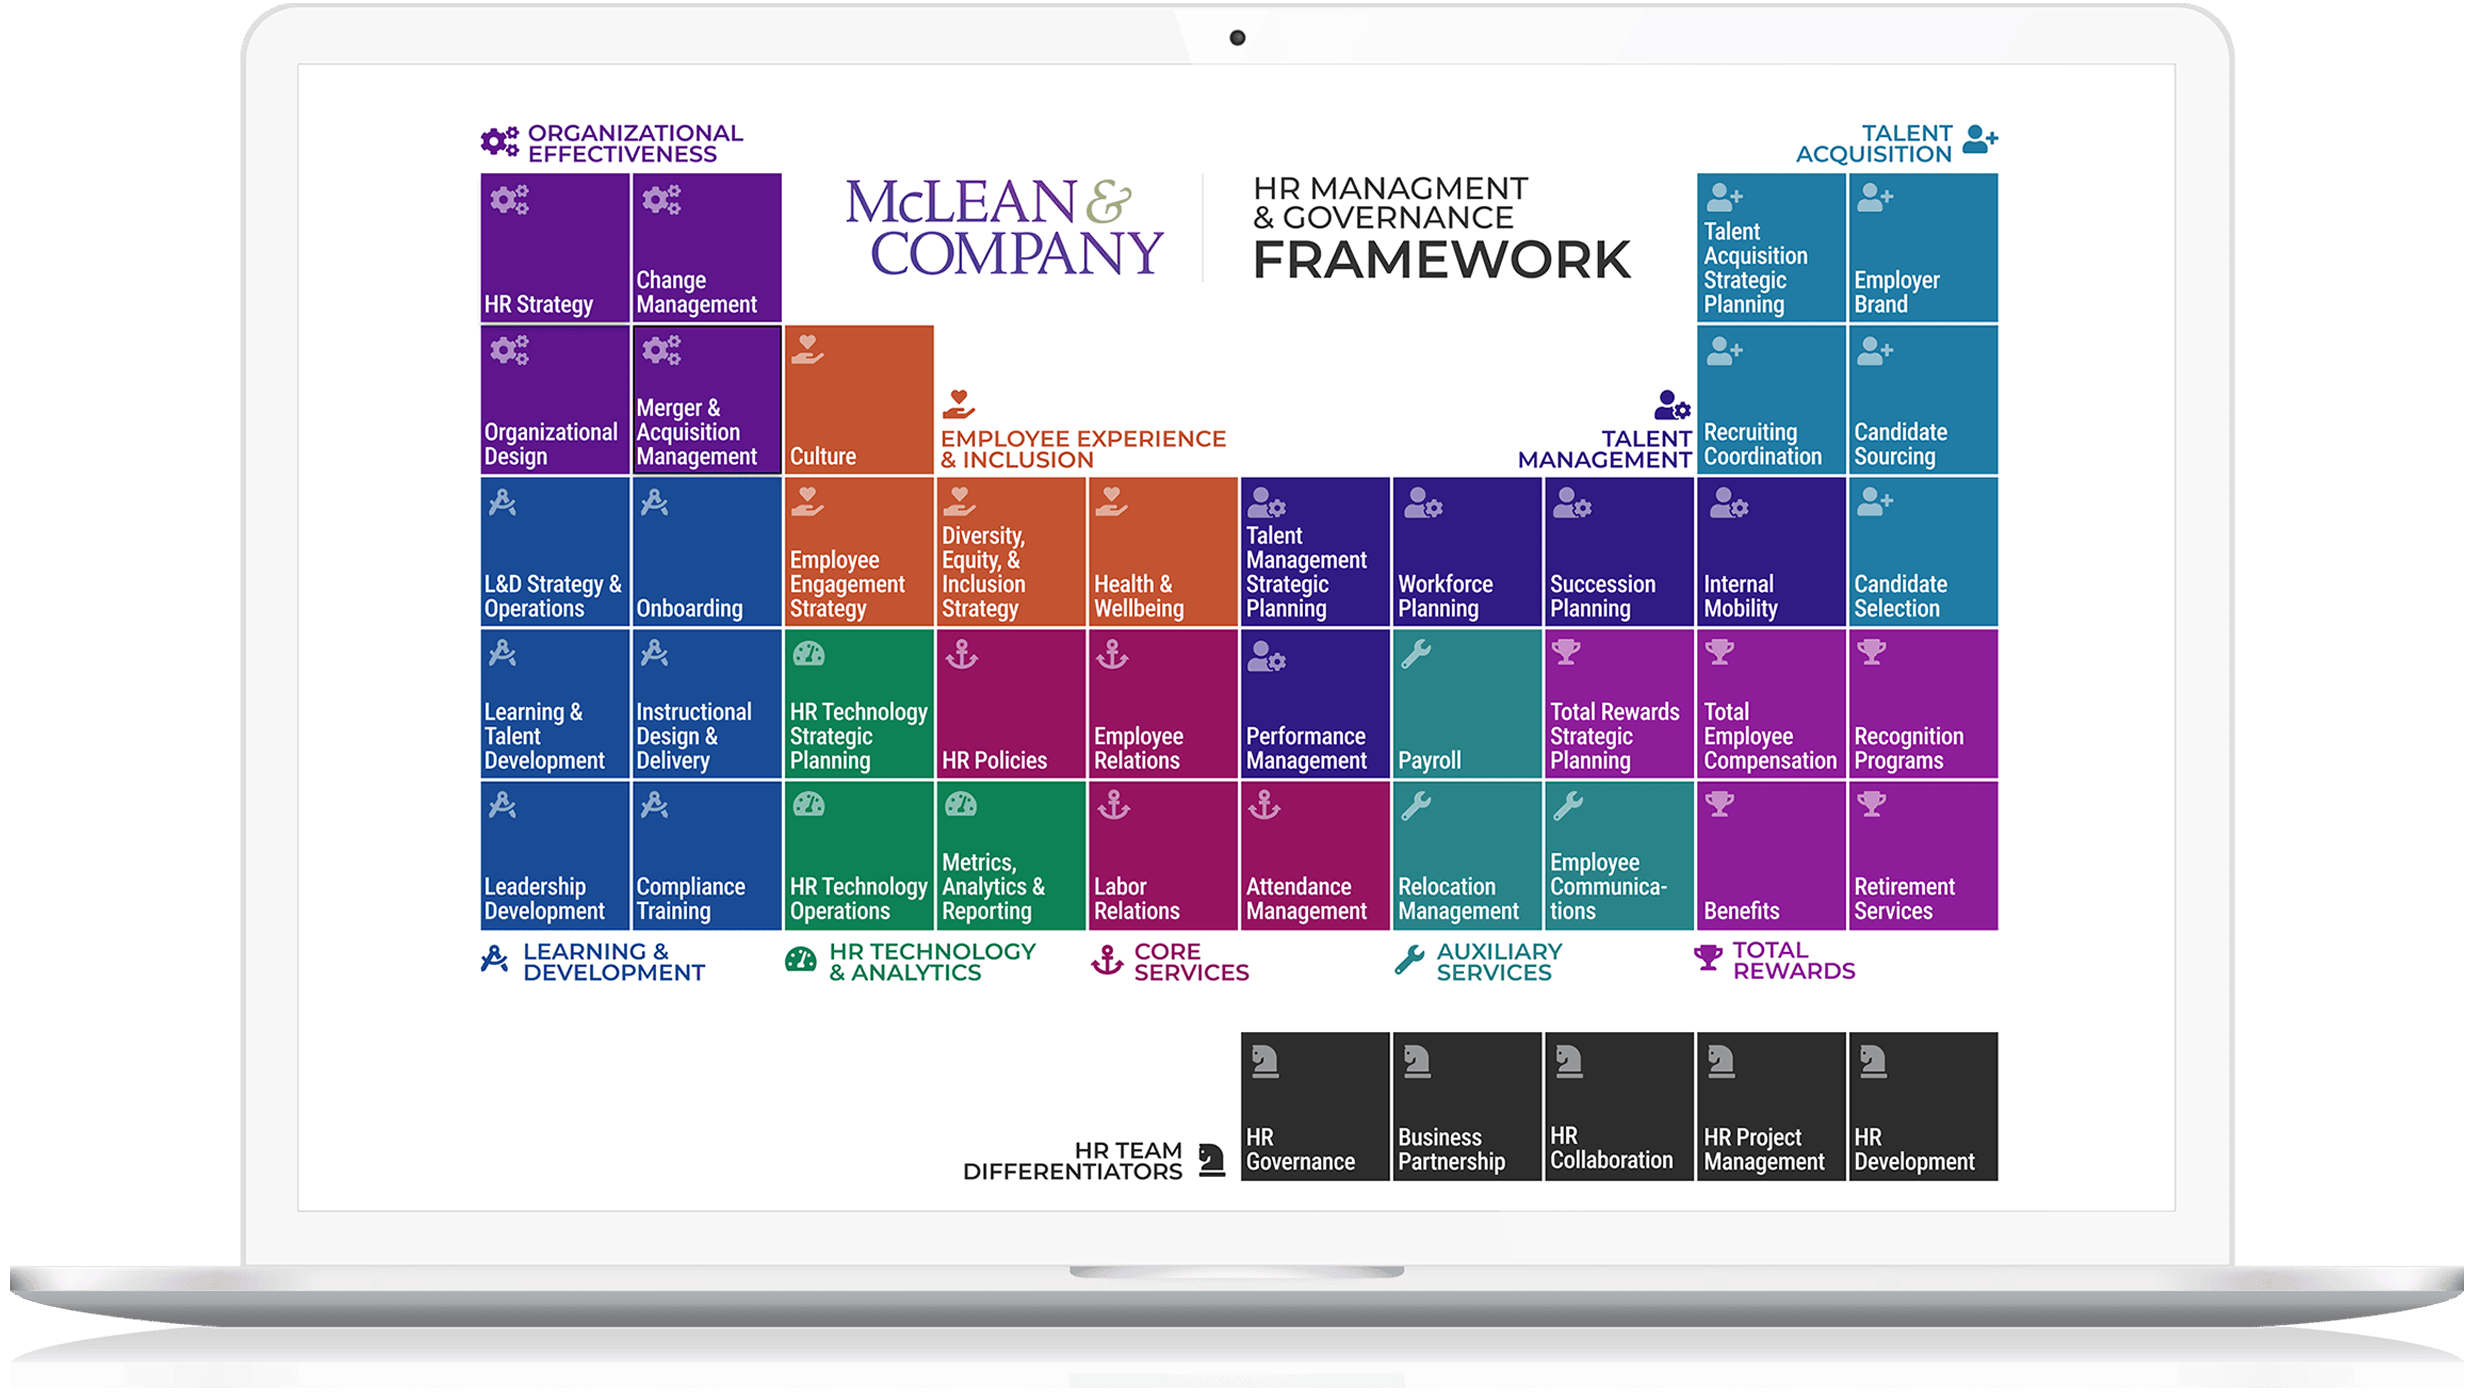 HRMG framework